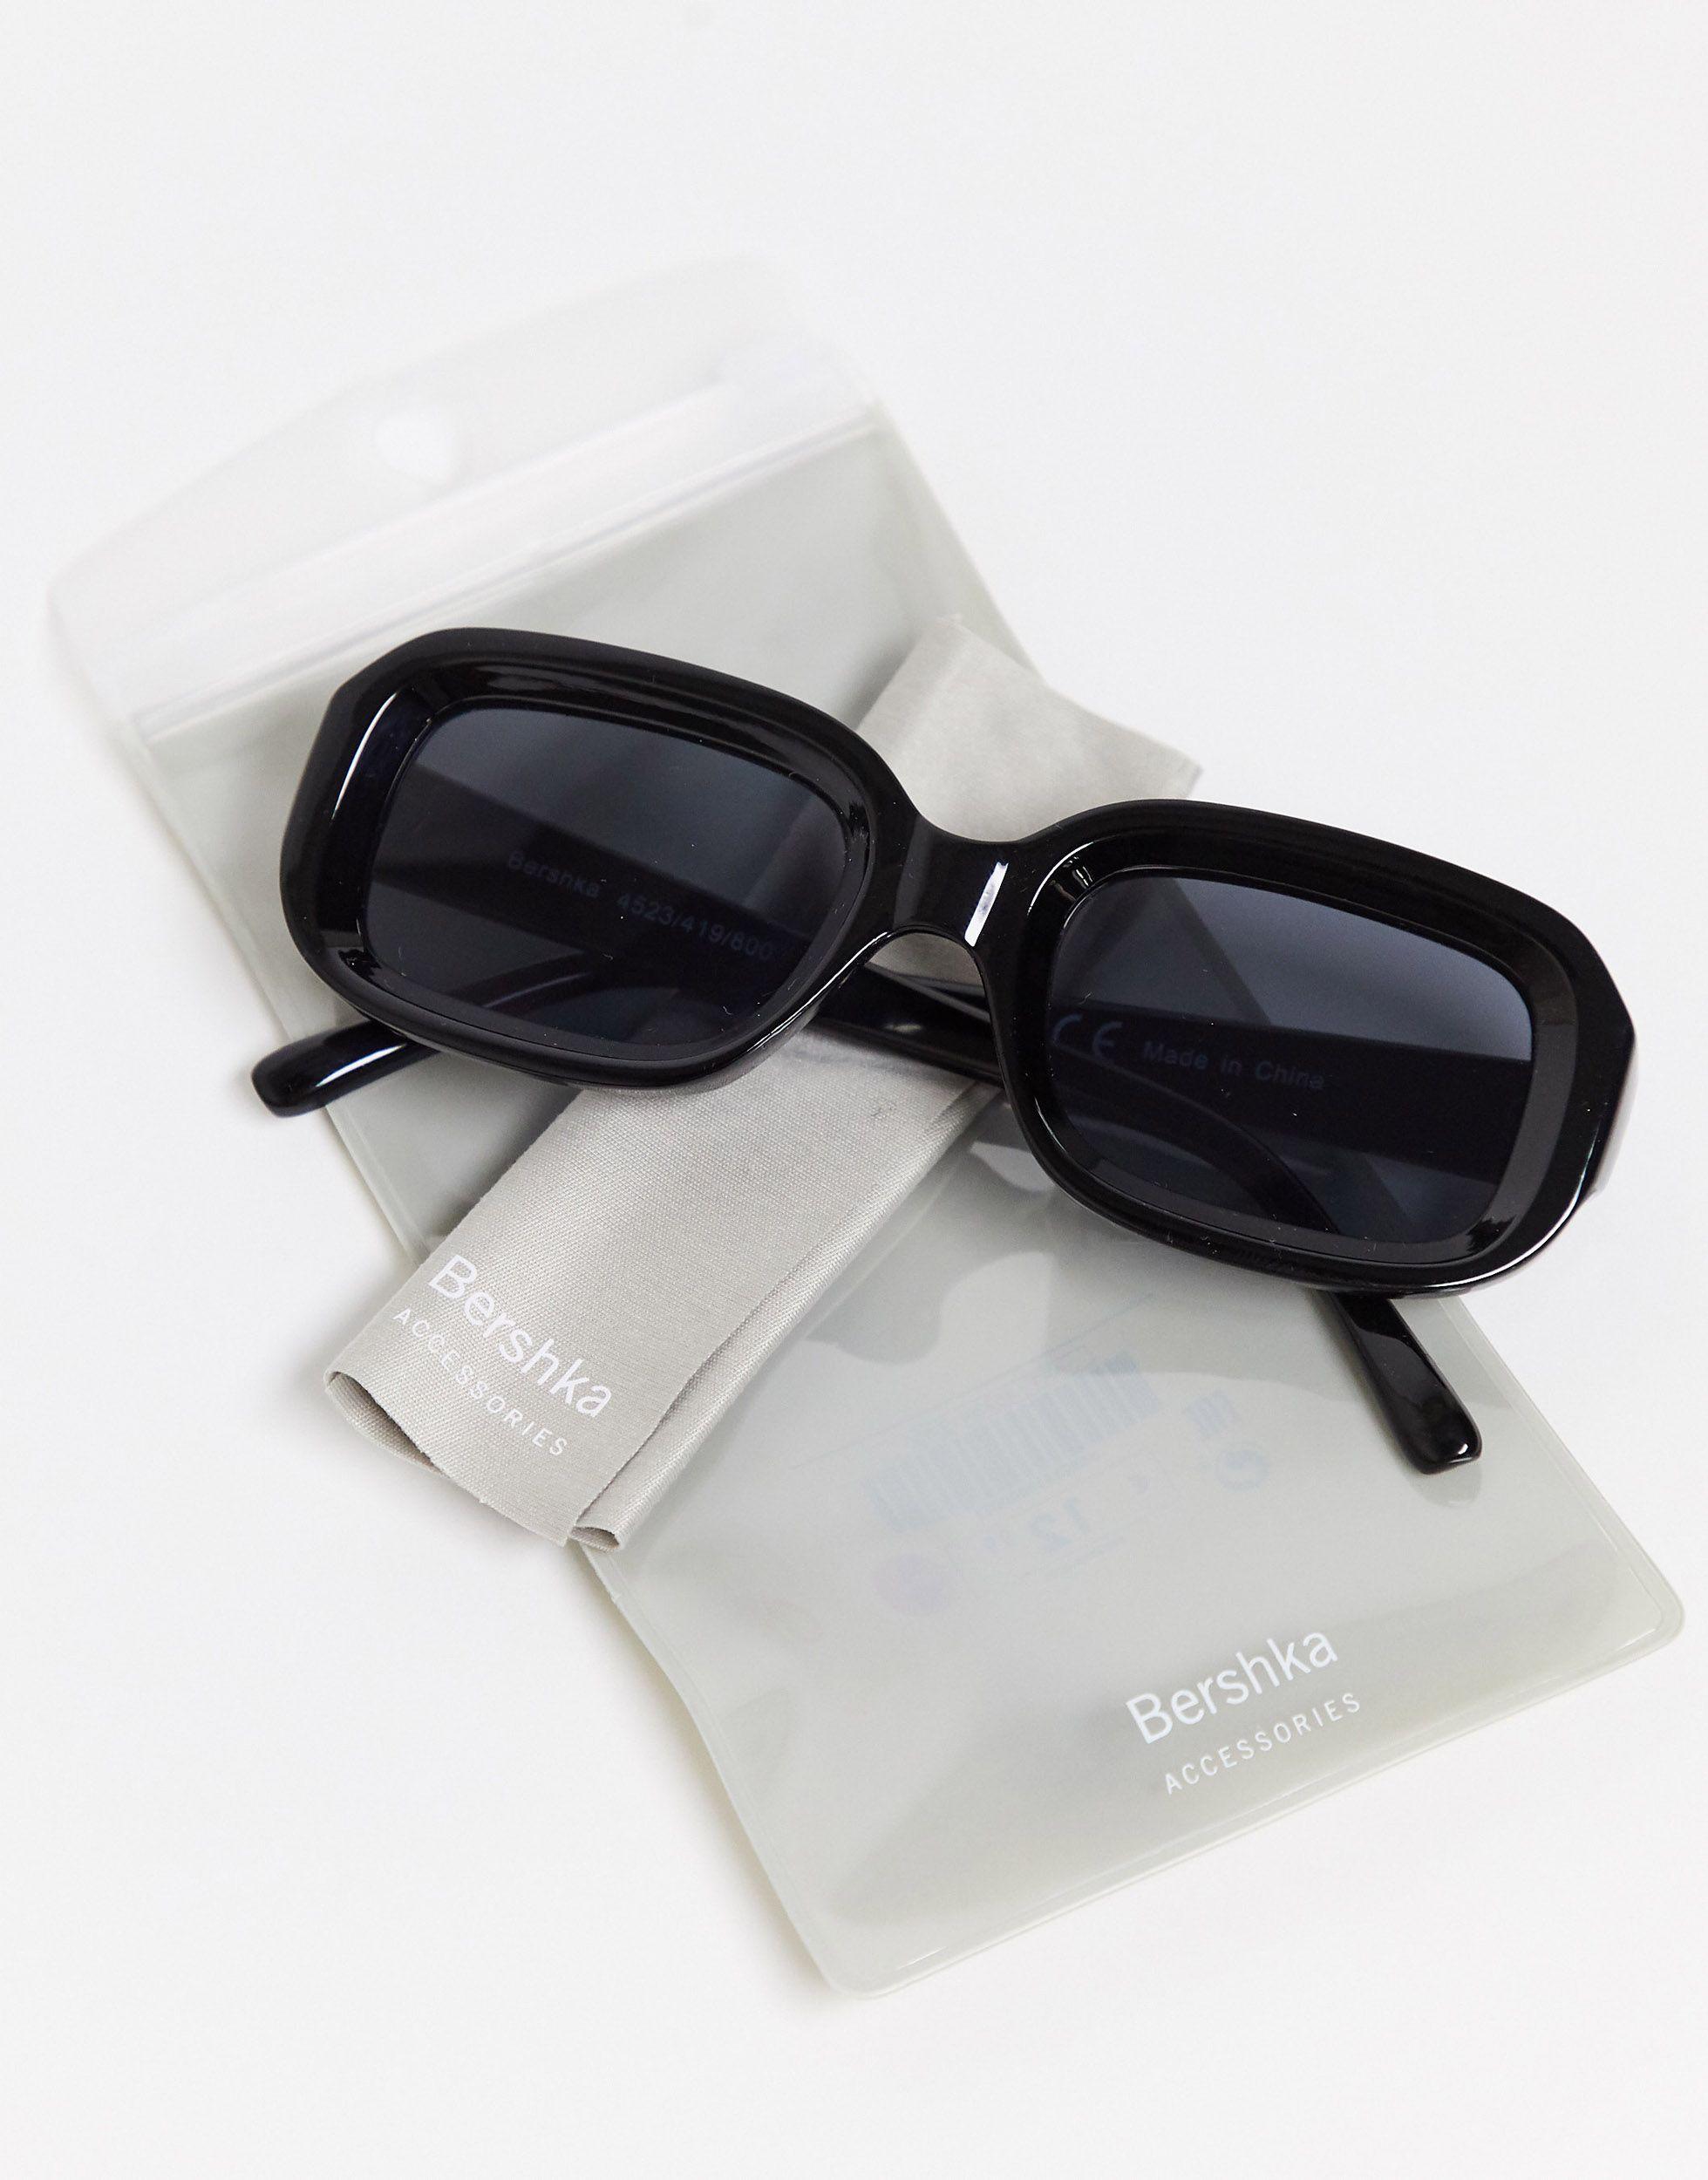 Bershka Synthetic Fan Sunglasses in Black - Lyst